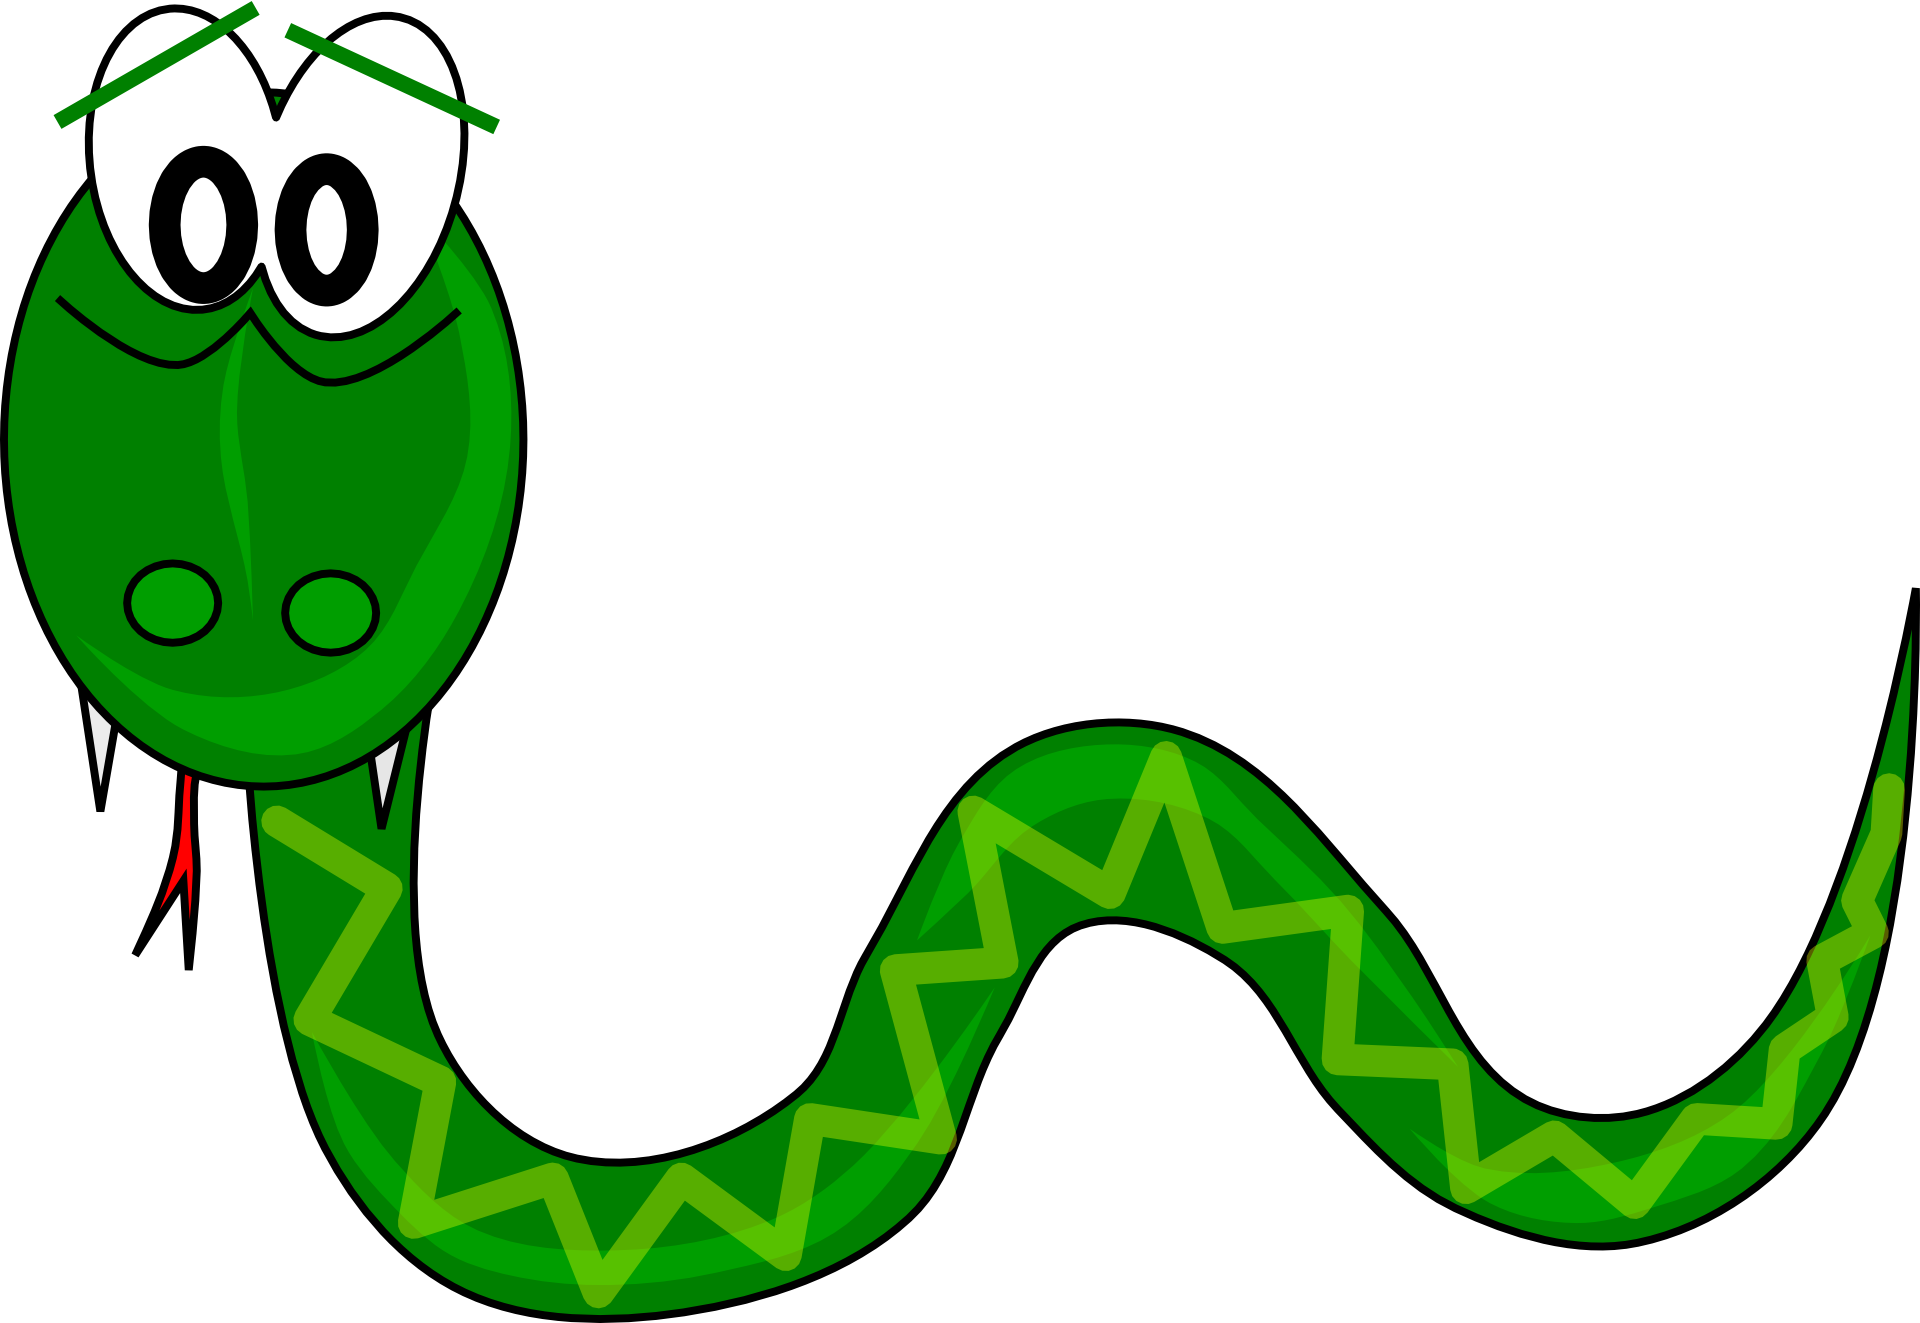 офидиофобия - так называется боязнь змей